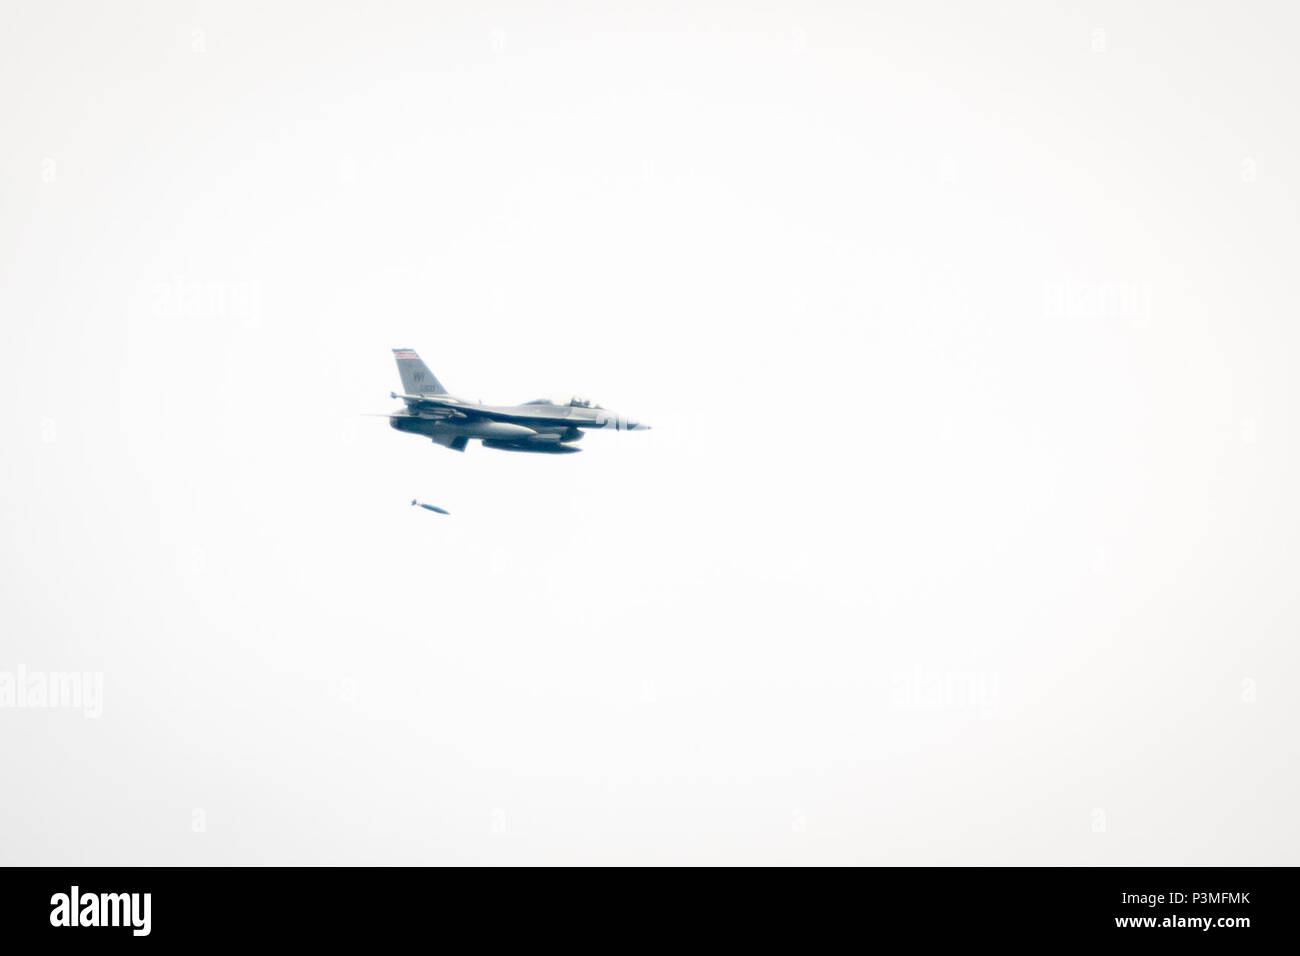 En Wisconsin, la Guardia Nacional Aérea de combate F-16 Falcon, 115ª Ala de caza, preformas práctica misiones inertes, usando una bomba de 500 libras en Fort McCoy, Wisconsin, el 13 de julio de 2016. (Ee.Uu. Foto del ejército por el SPC. John Russell/liberado) Foto de stock